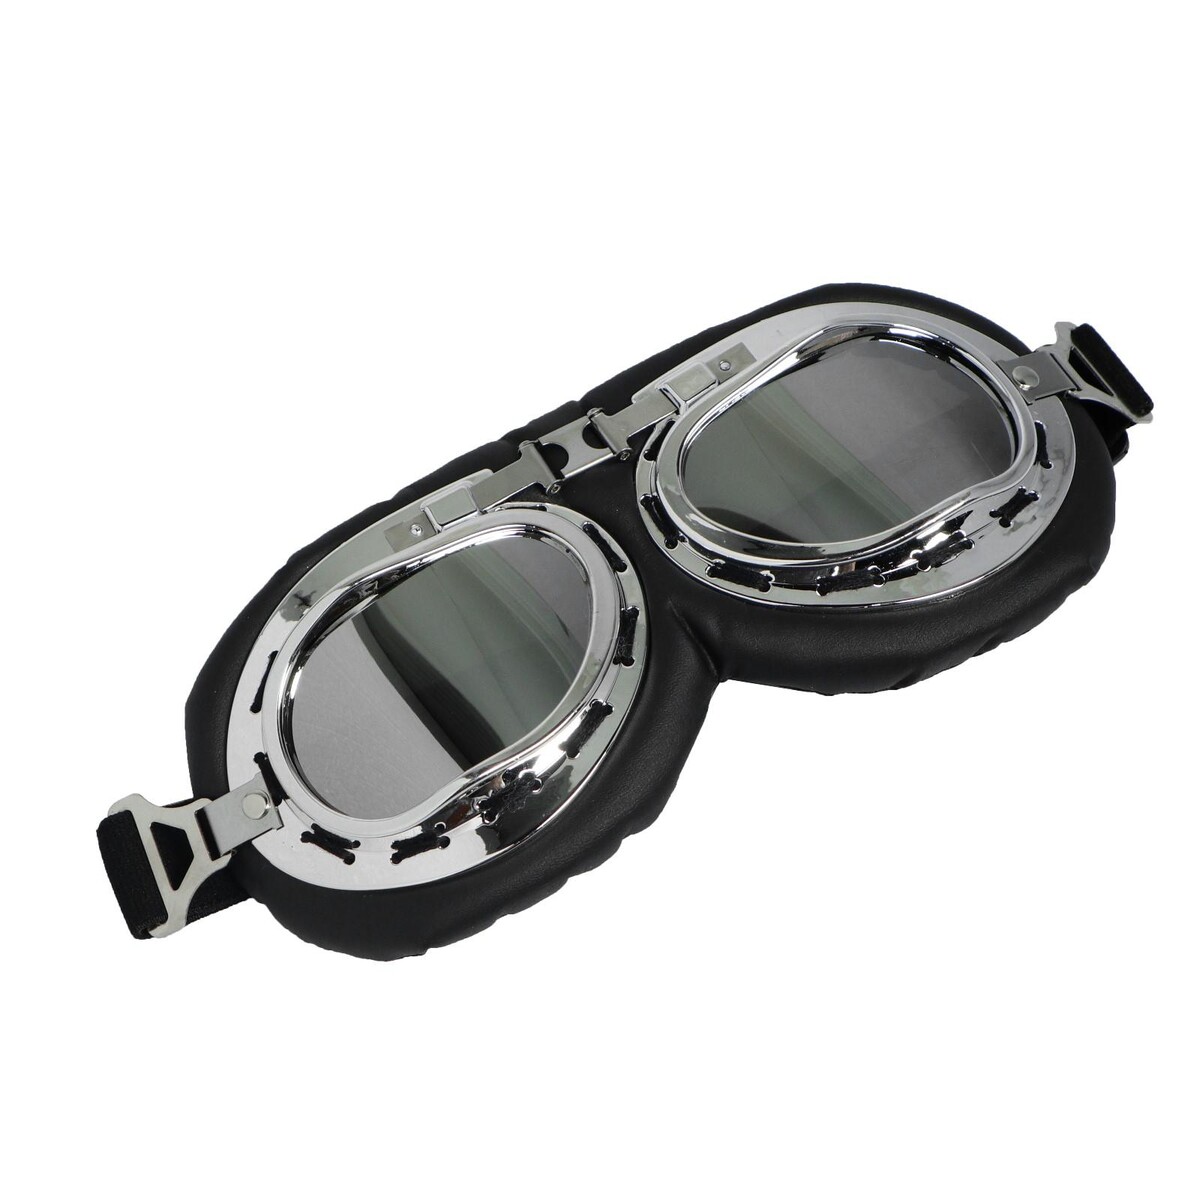 Очки для езды на мототехнике ретро, стекло хром, черные ерш для туалета solinne mirror b 82714 стекло сатин хром стекло 2522 021